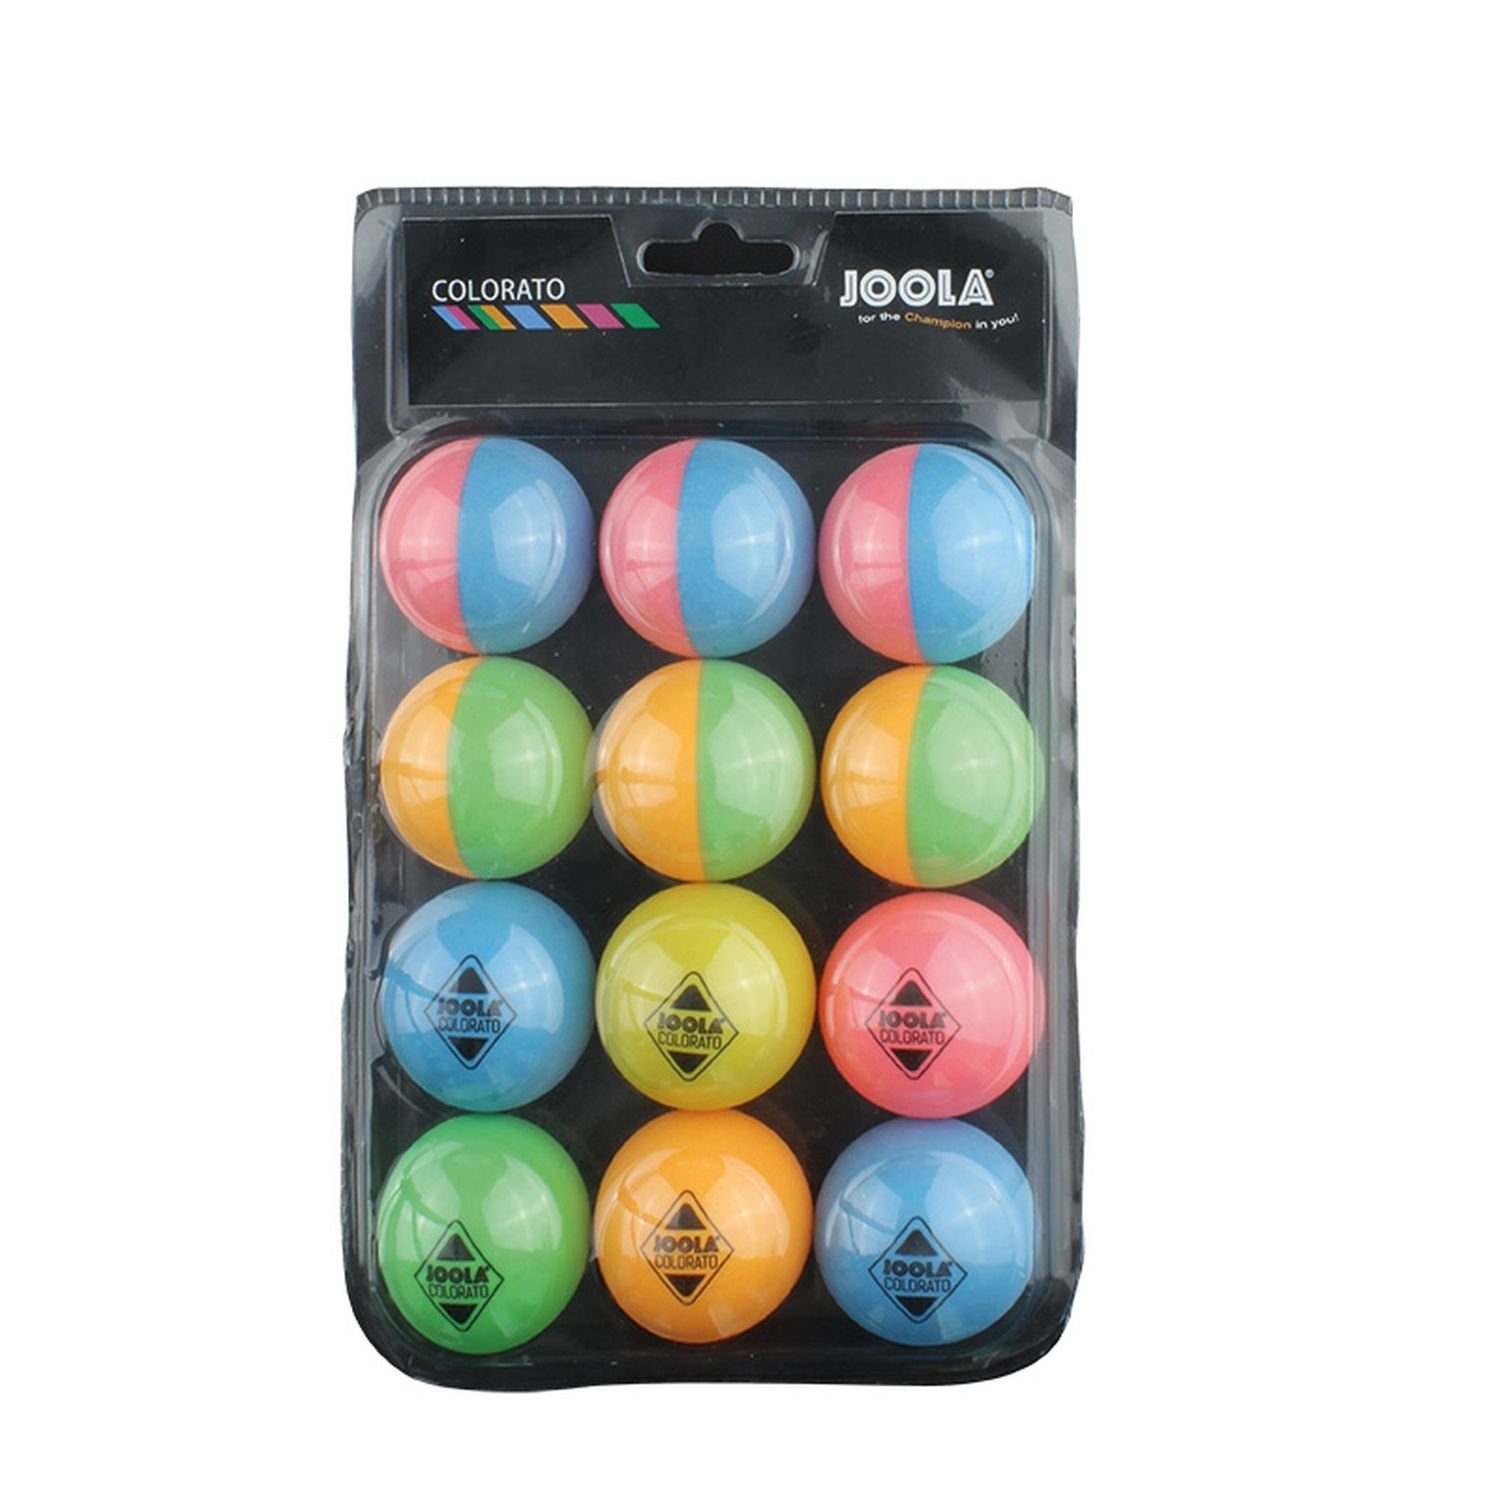 mit Tischtennis Tischtennisball Joola Colorato Balls Ballset 12 bunten Bälle Tischtennisball Tischtennis Bällen, Ball